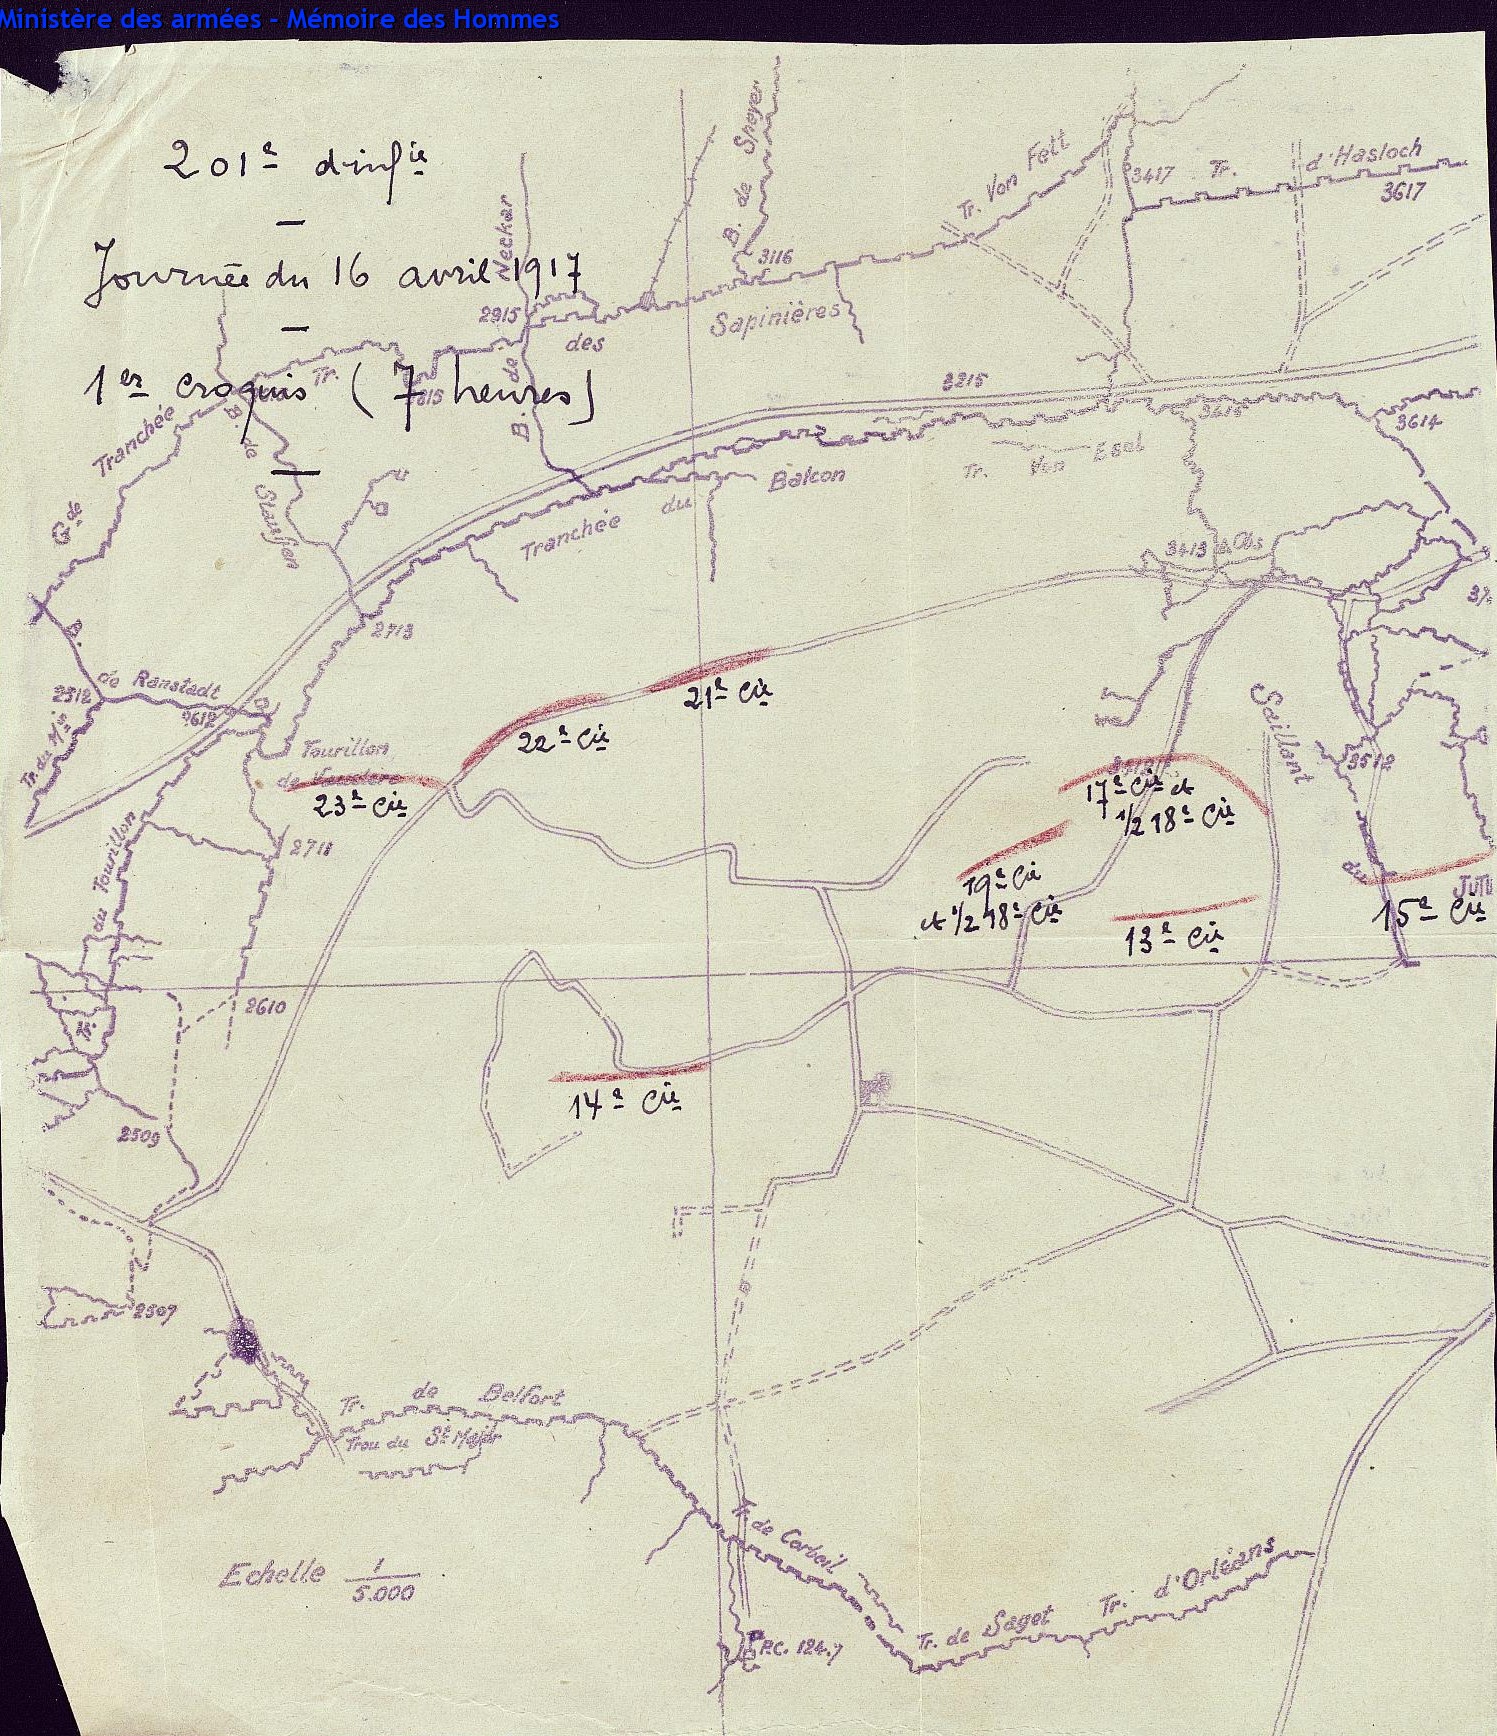 Position du 201e régiment d'infanterie à Craonne le 16 avril 1917